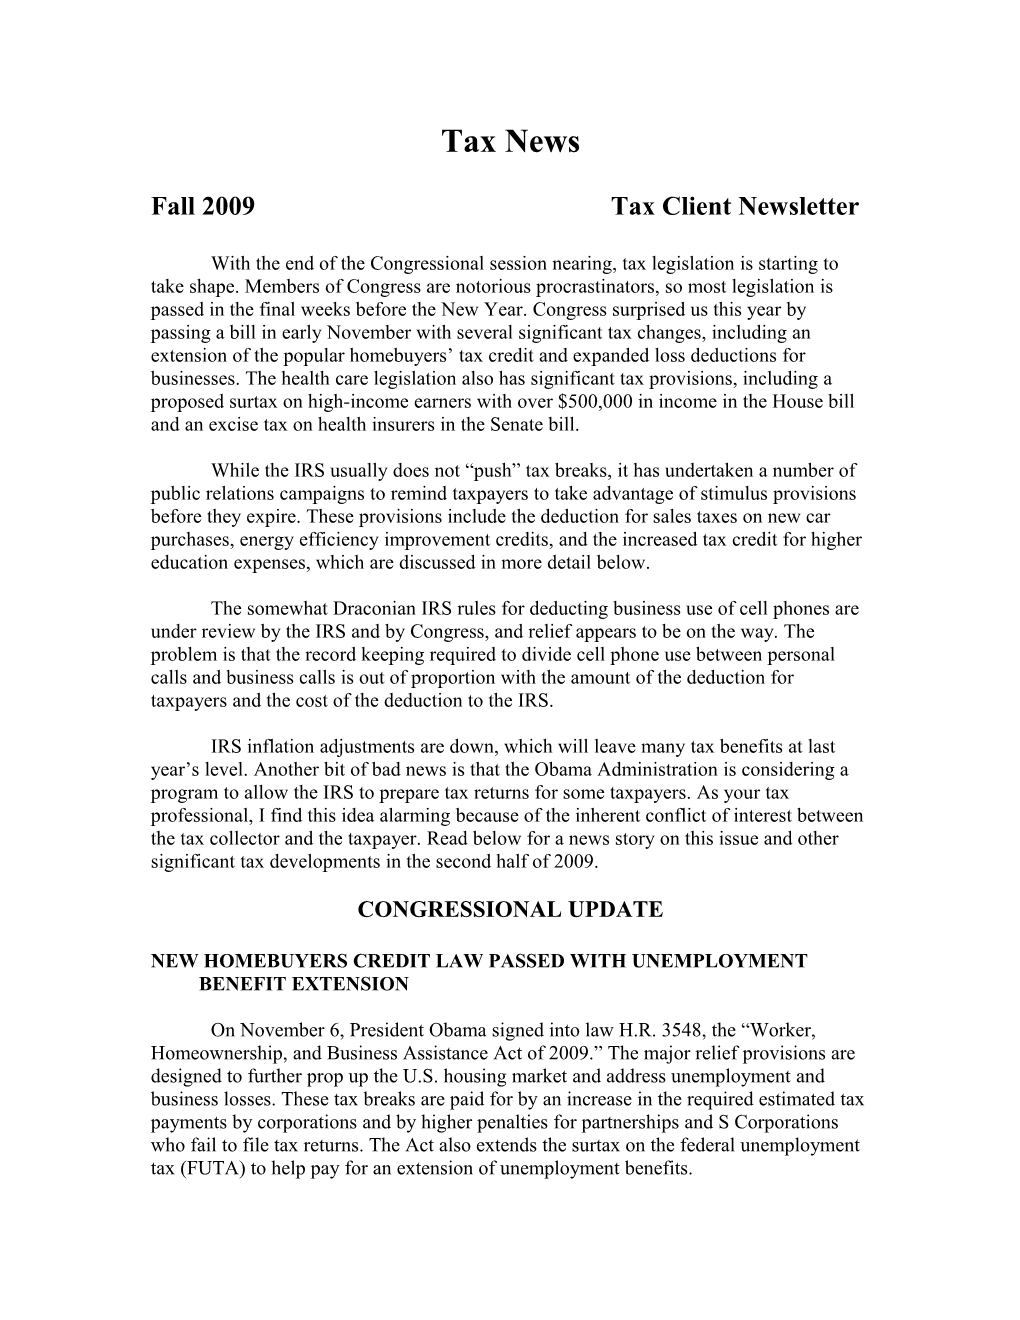 Fall 2009 Tax Client Newsletter